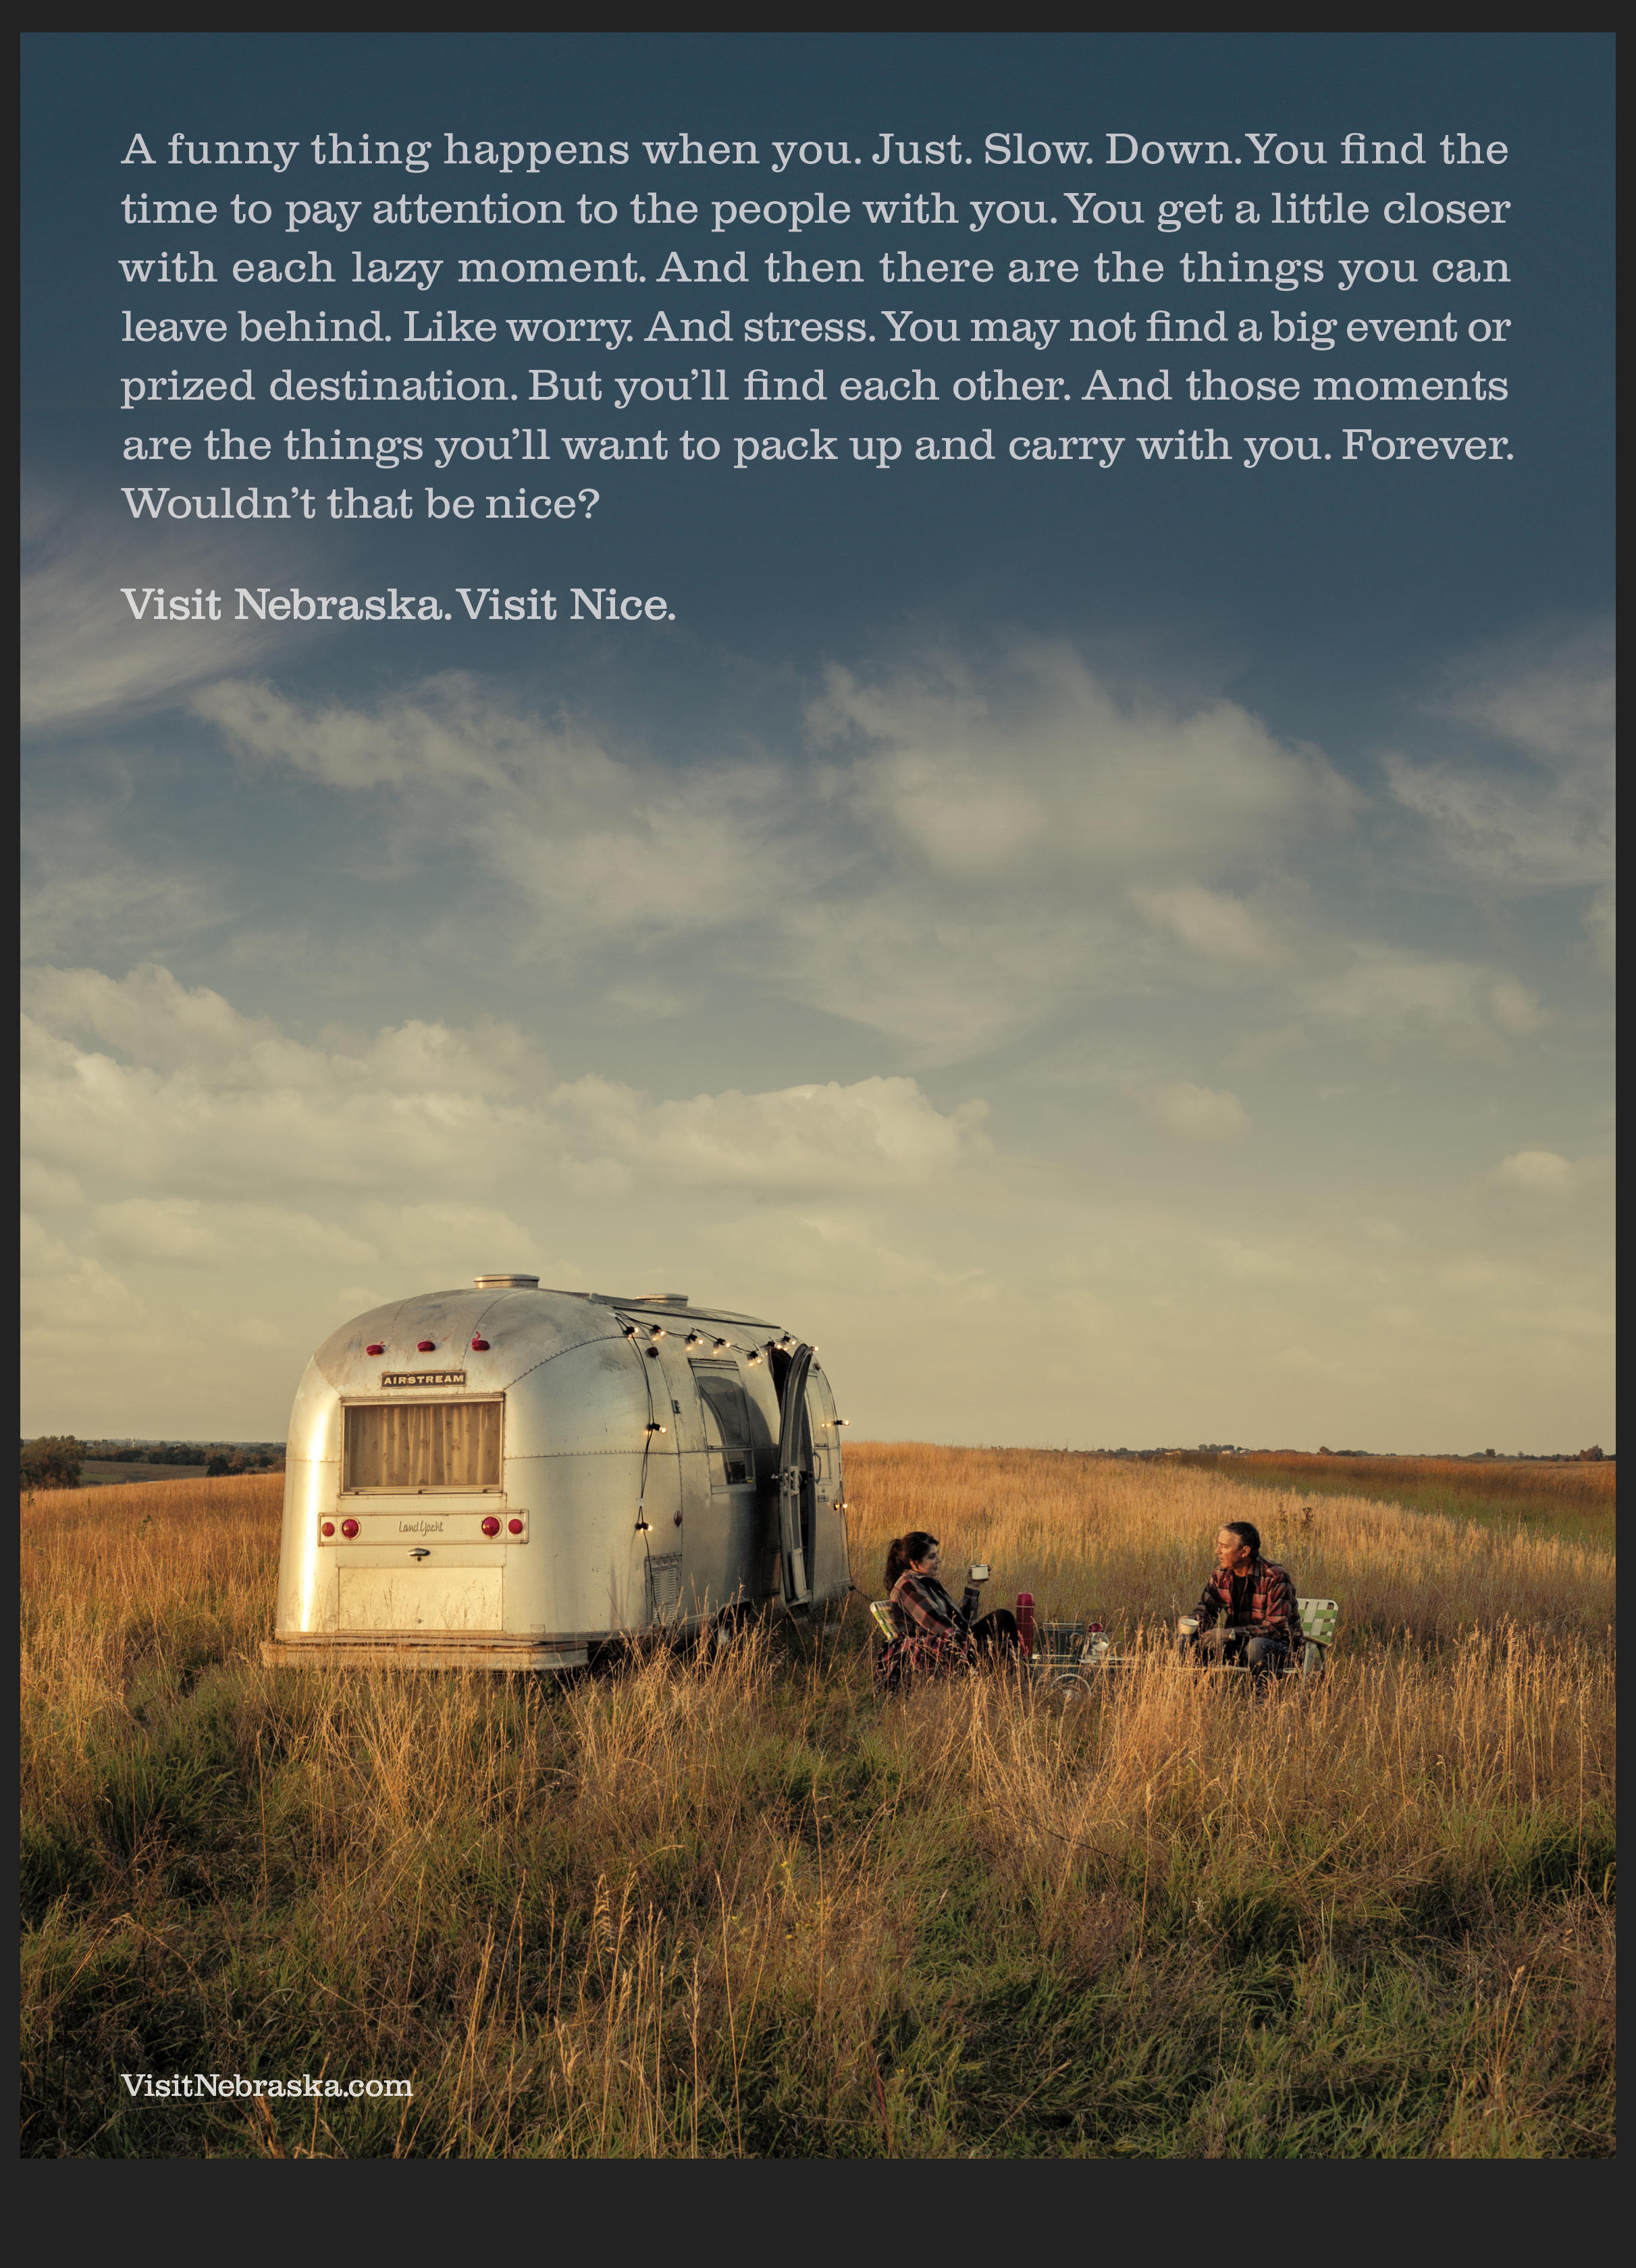 Nebraska Tourism Airstream ad copy